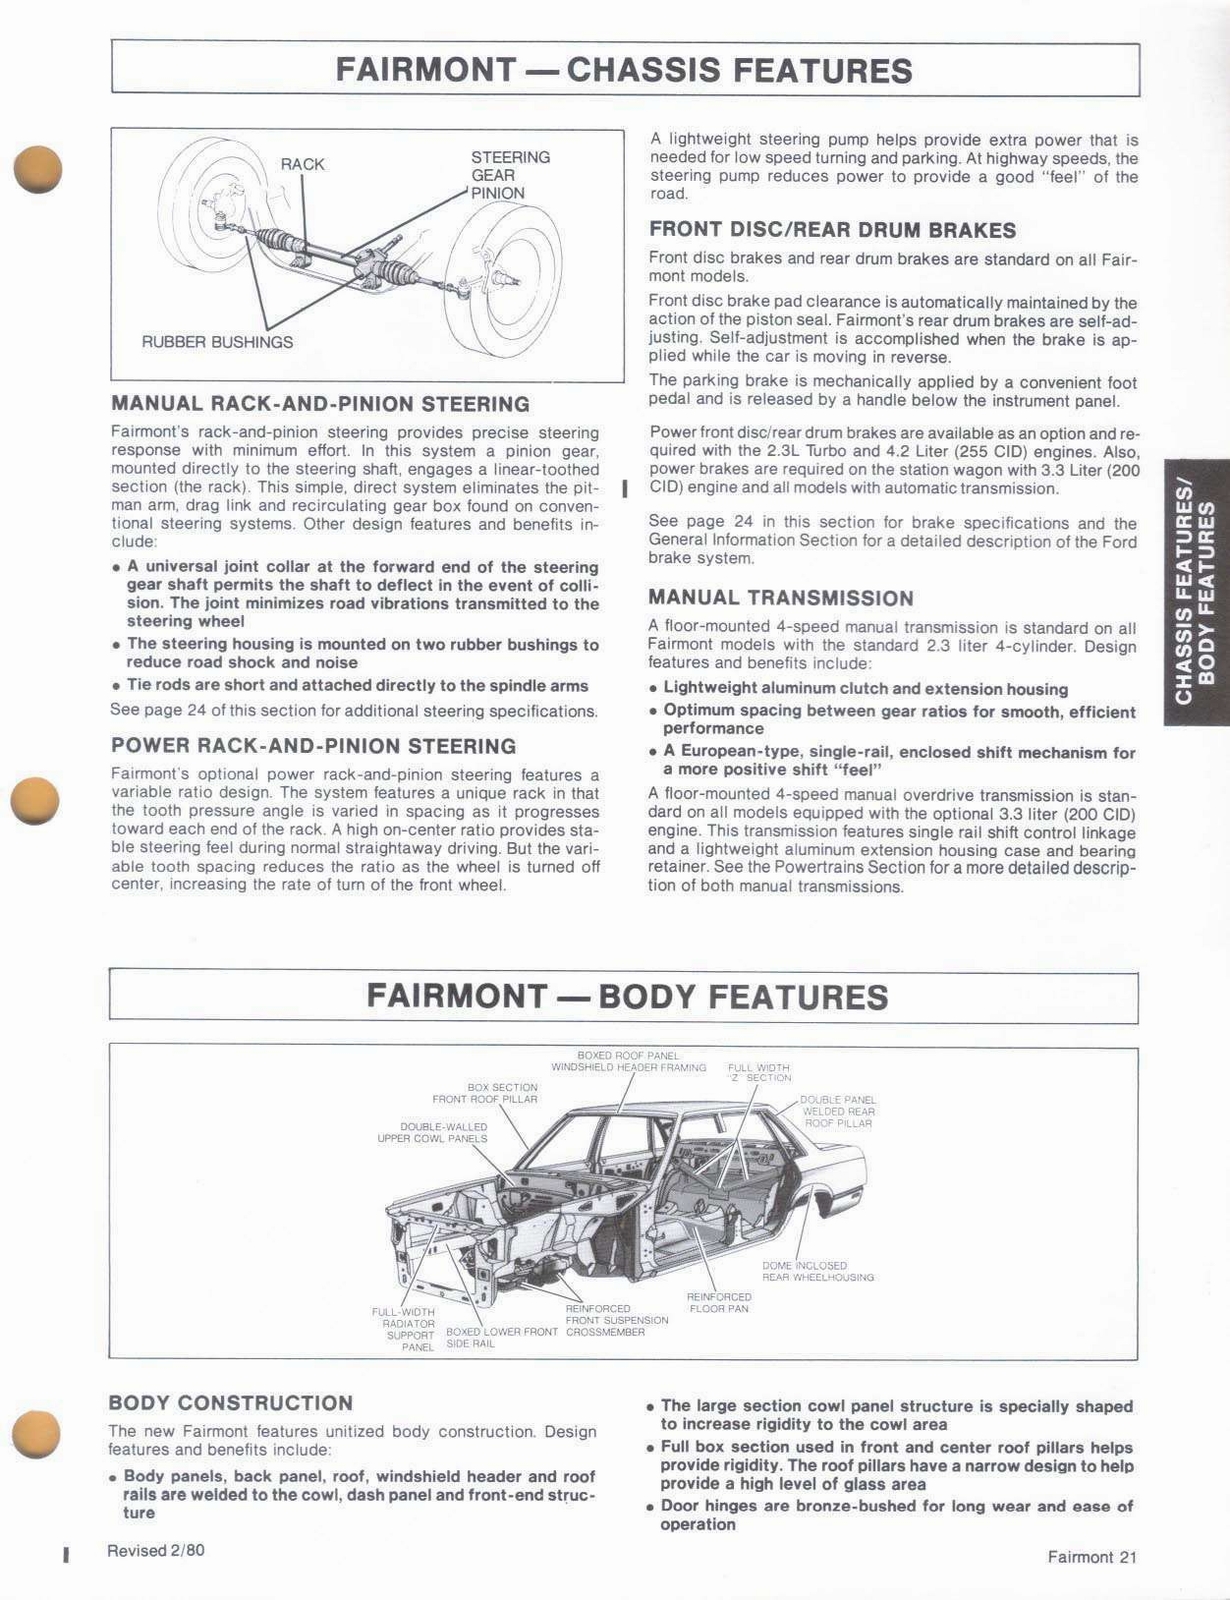 n_1980 Ford Fairmont Car Facts-21.jpg